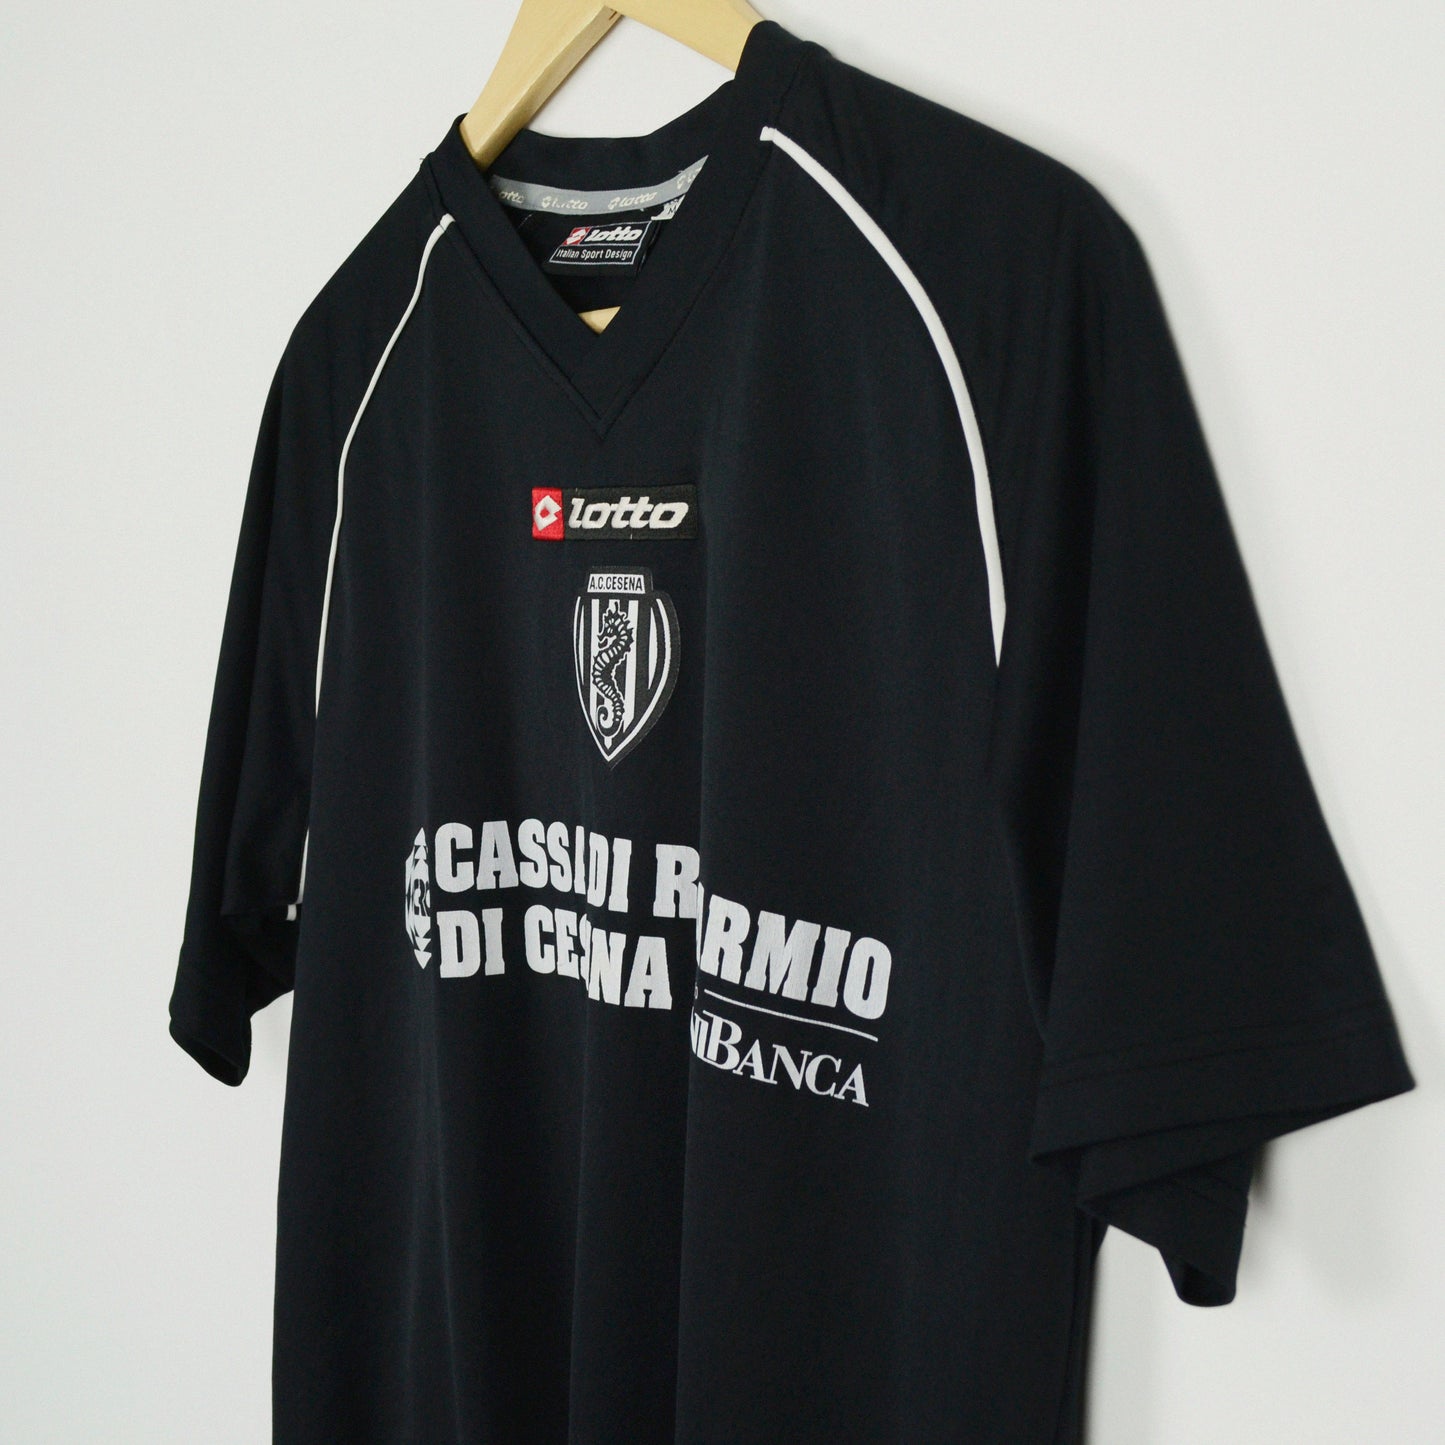 2006-07 Lotto Cesena Away Shirt M